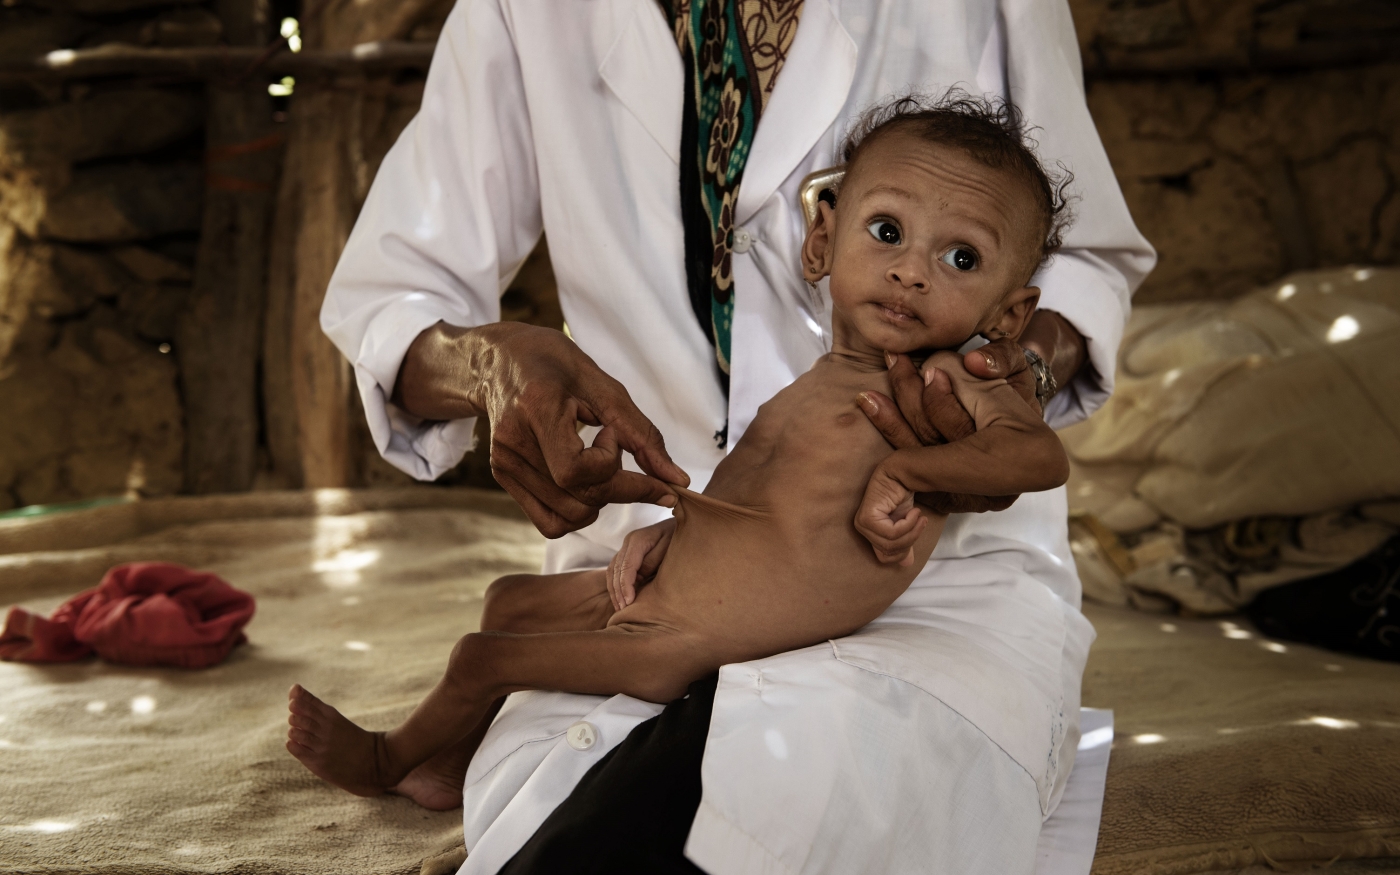 Une infirmière examine un enfant malade dans la campagne d’Abs, dans le nord-ouest du Yémen (MEE/Alessio Romenzi)